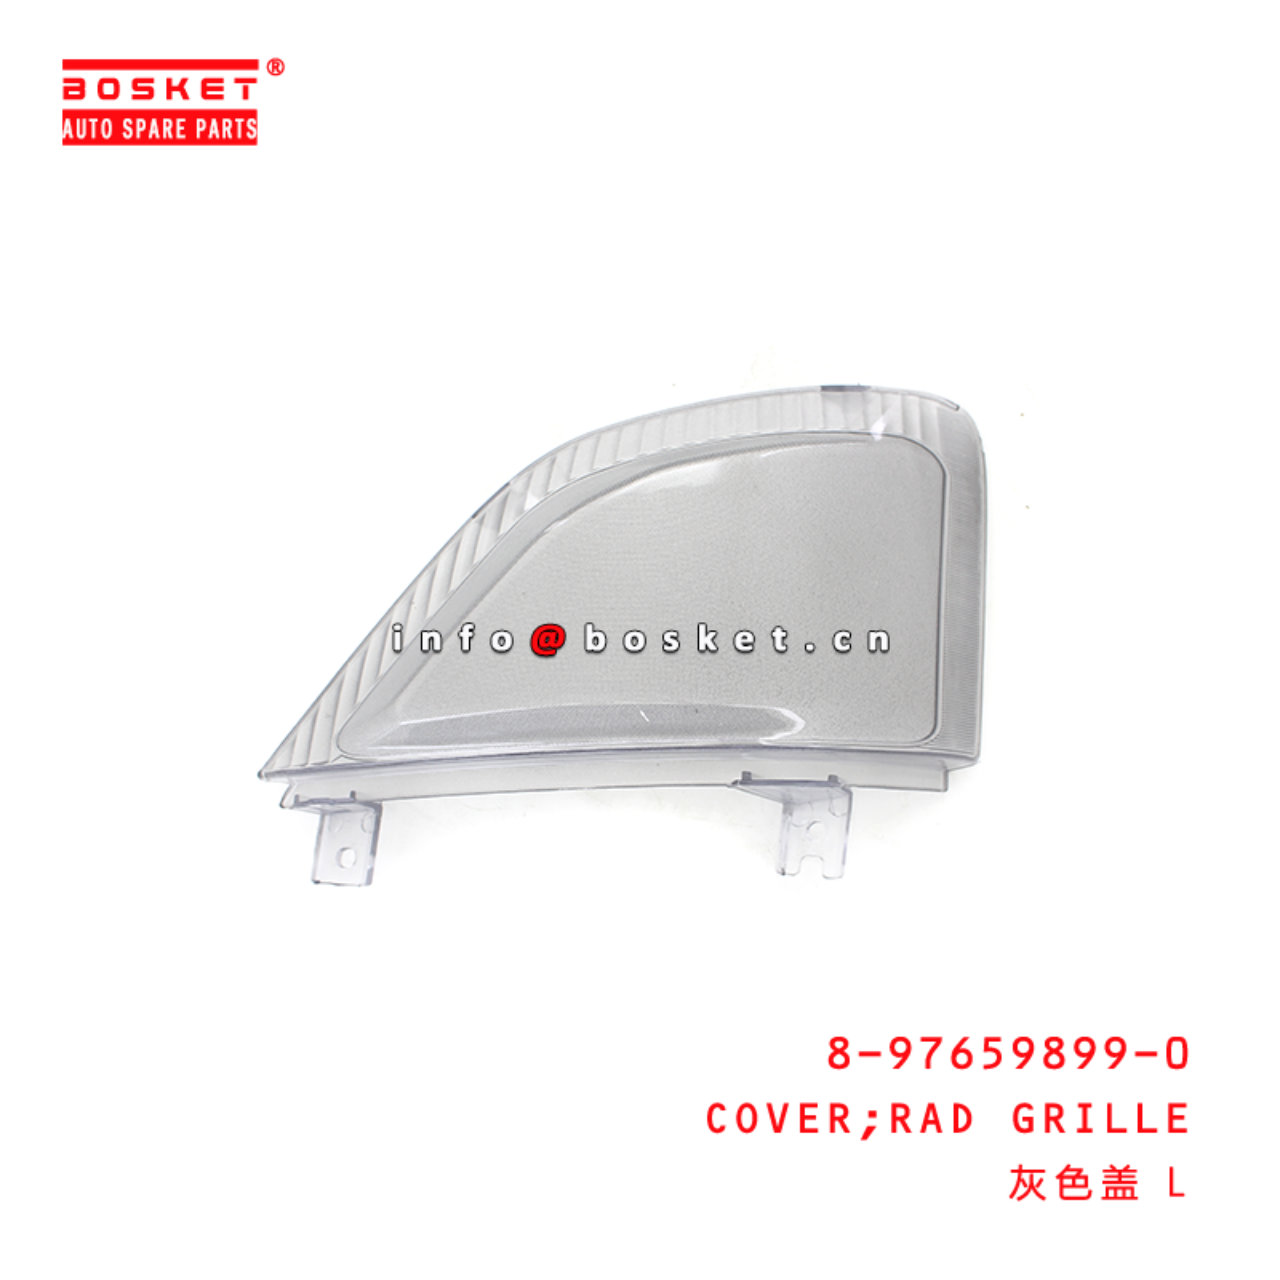 8-97659899-0 Rad Grille Cover suitable for ISUZU 700P 8976598990 